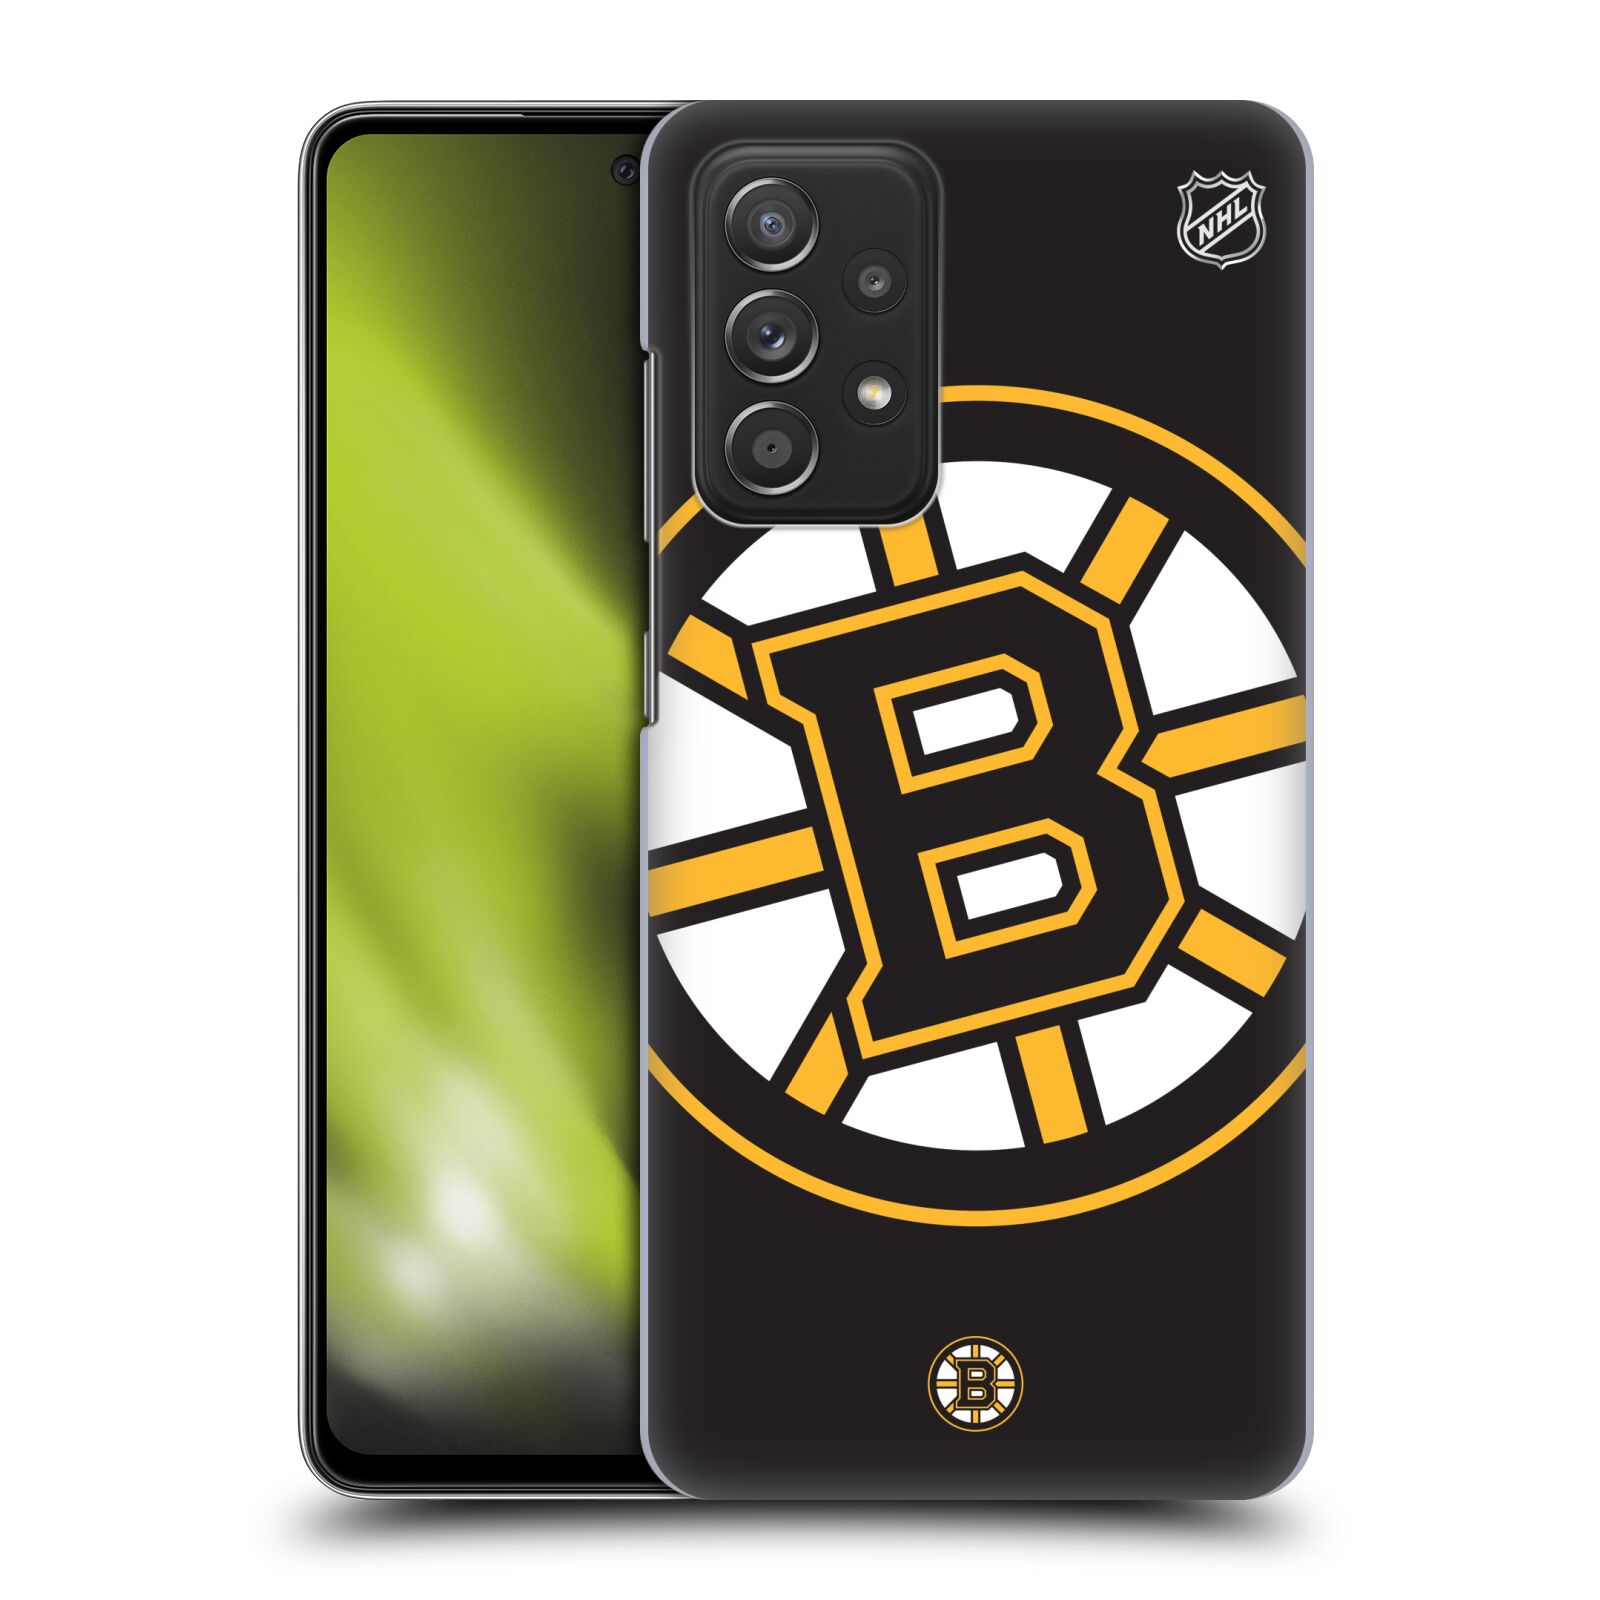 Pouzdro na mobil Samsung Galaxy A52 / A52 5G / A52s 5G - HEAD CASE - Hokej NHL - Boston Bruins - velký znak